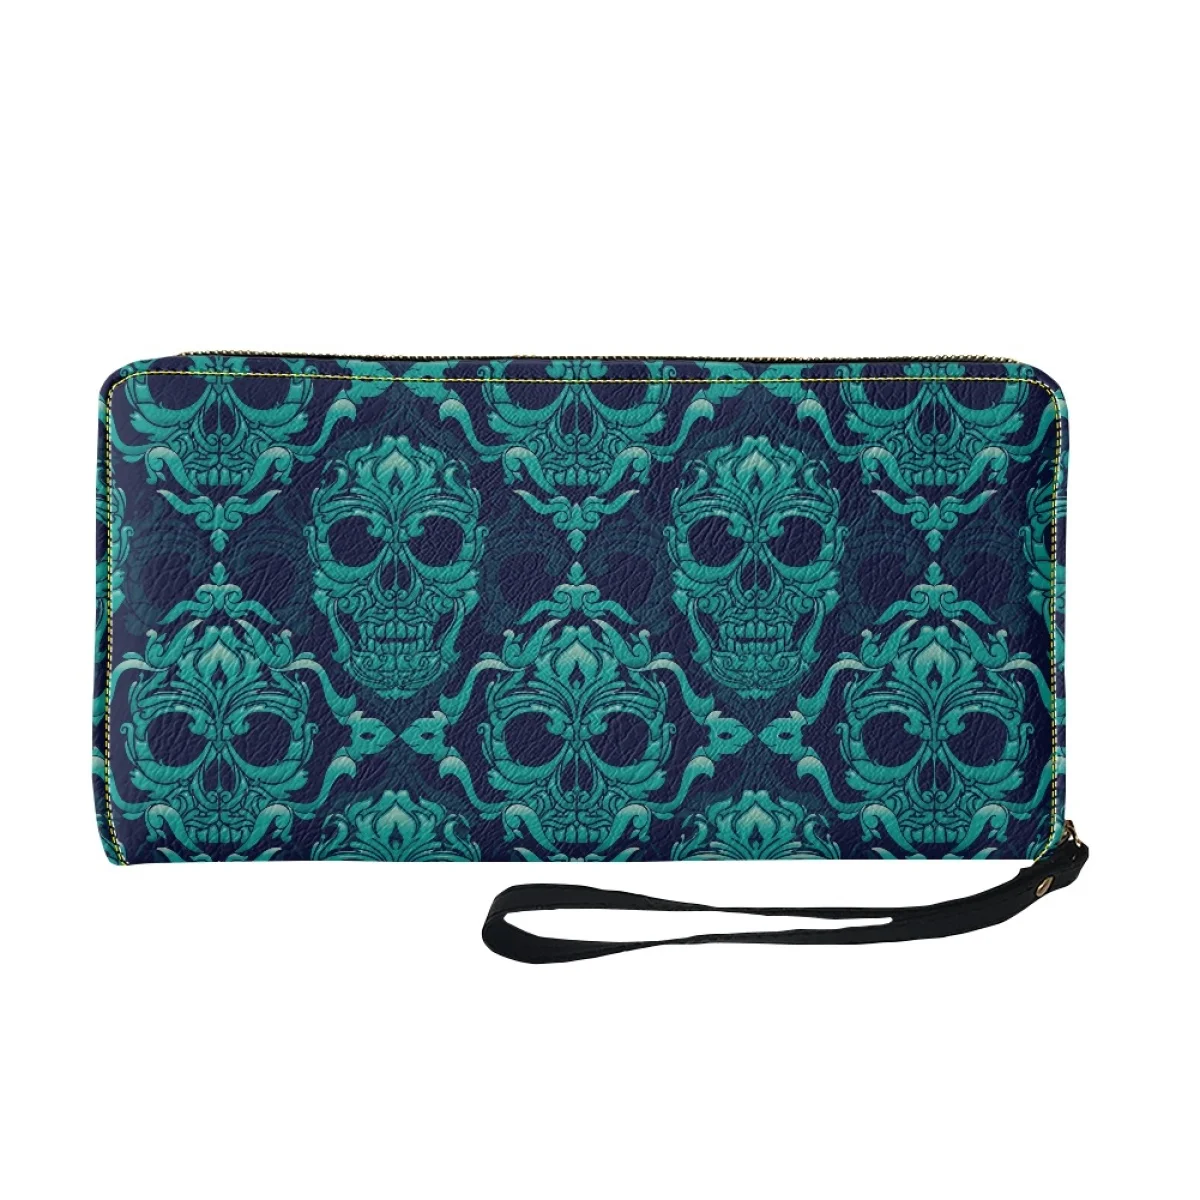 Woman Luxury Brand Wallet Pu Leather Blue Skull Pattern Wallet Minimalist Wallets With Strap Carteras De Mujer